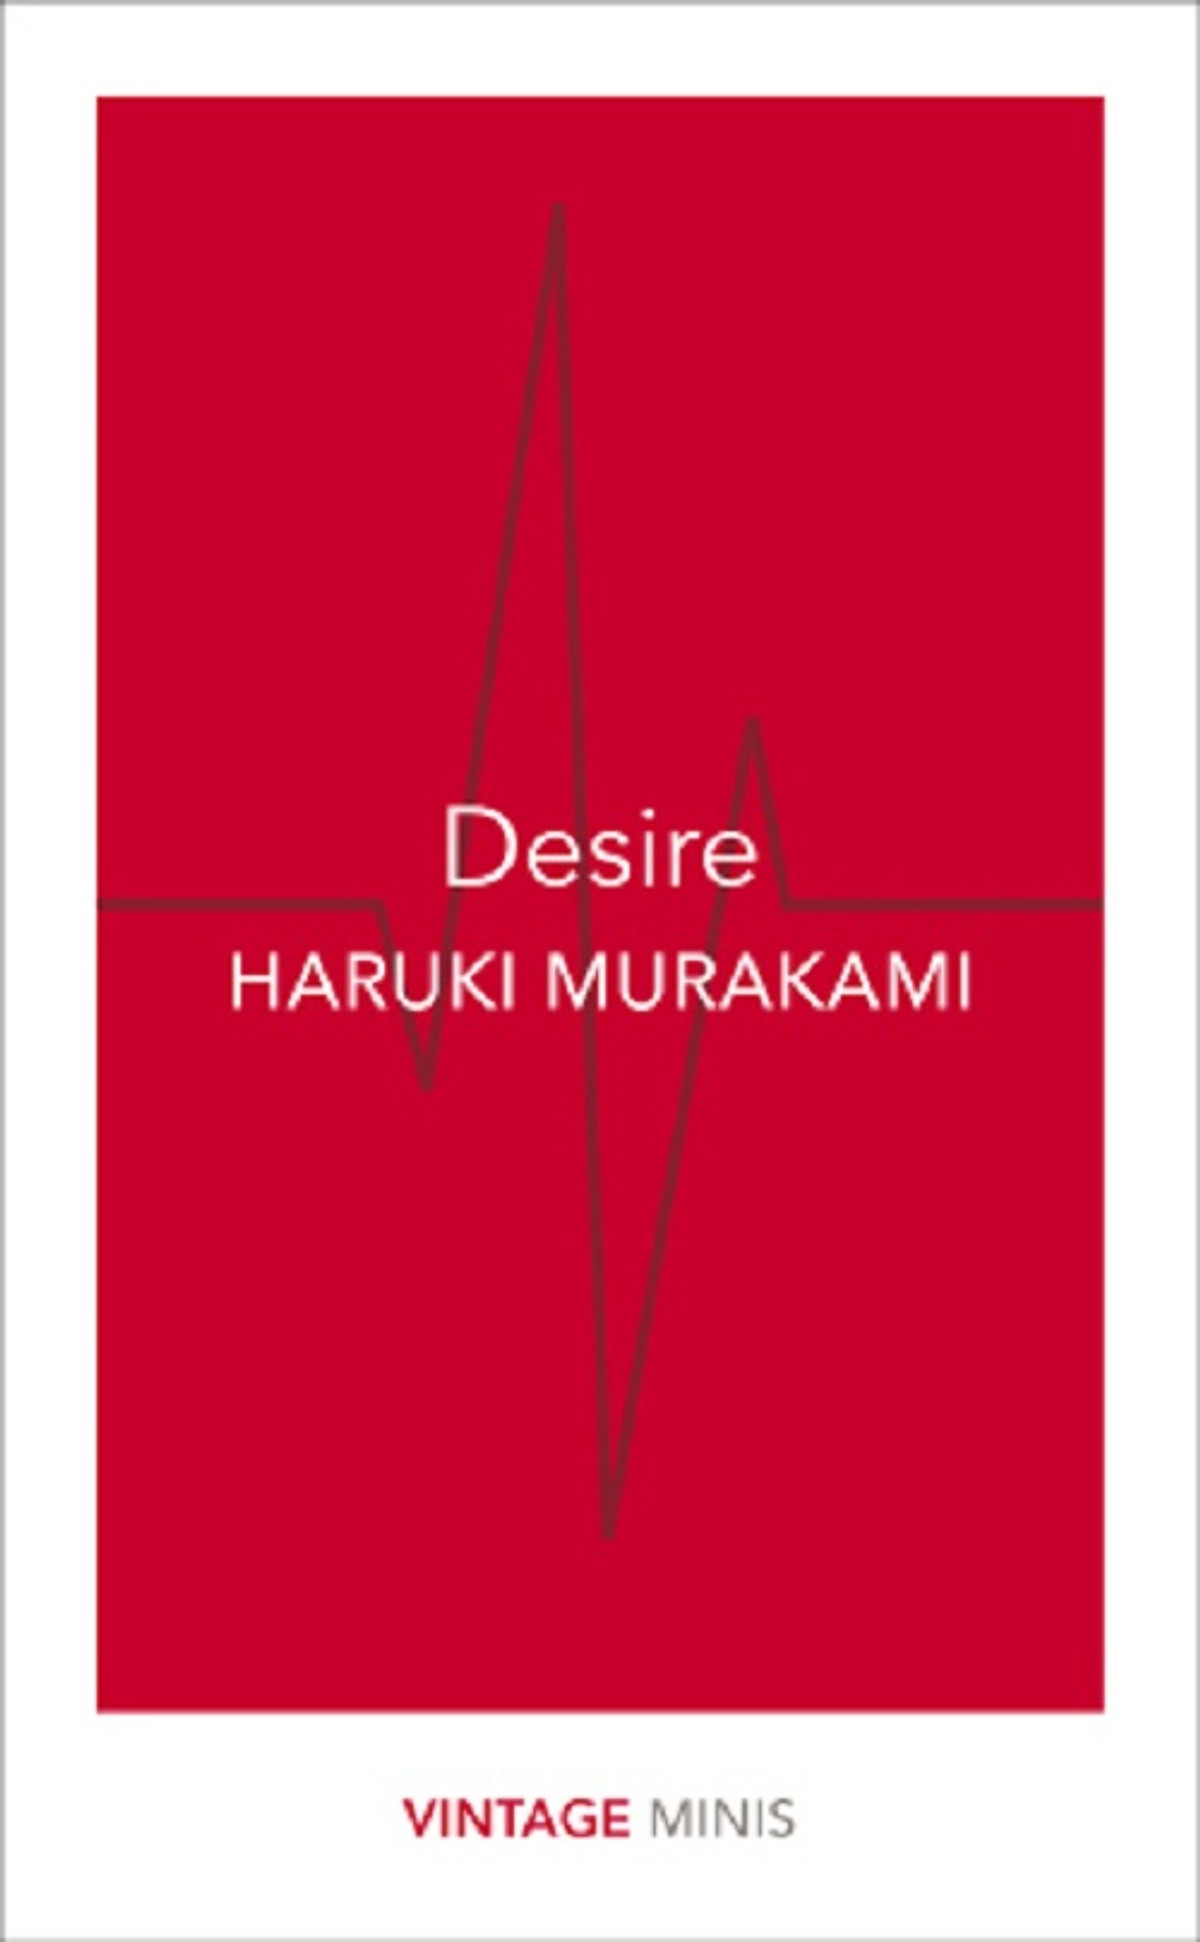 Desire by Haruki Murakami